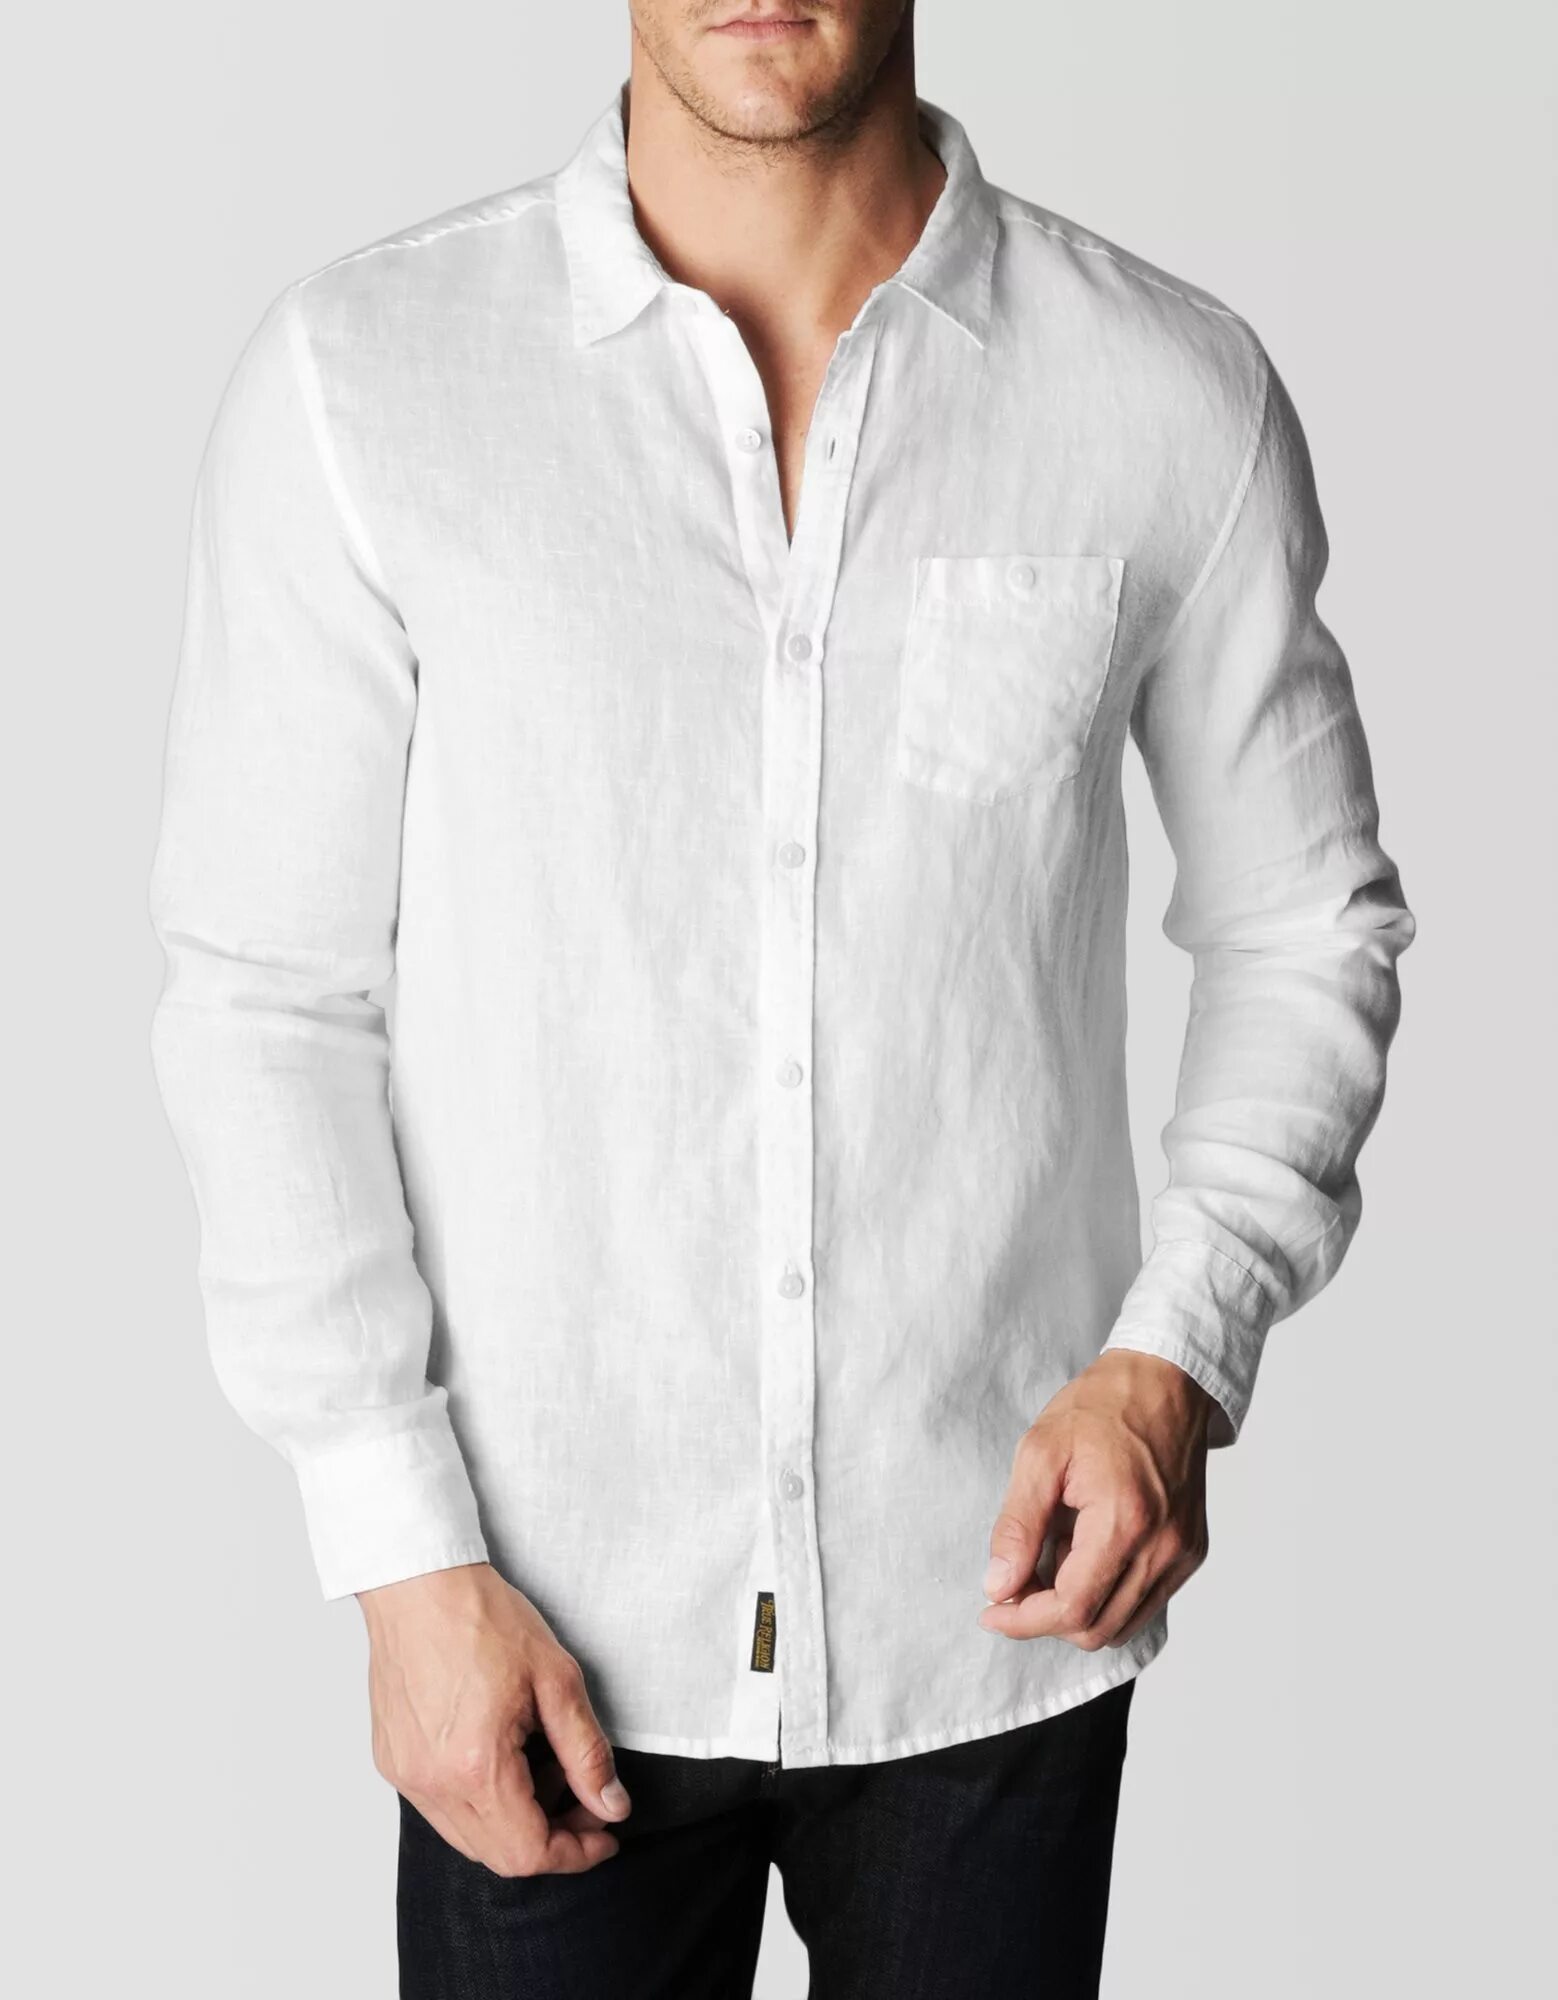 Springfield Linen est1988 рубашка мужская. Белая рубаха мужская. Мужская белая рубашка. Белая рубашка мужская с длинным рукавом. Біла з